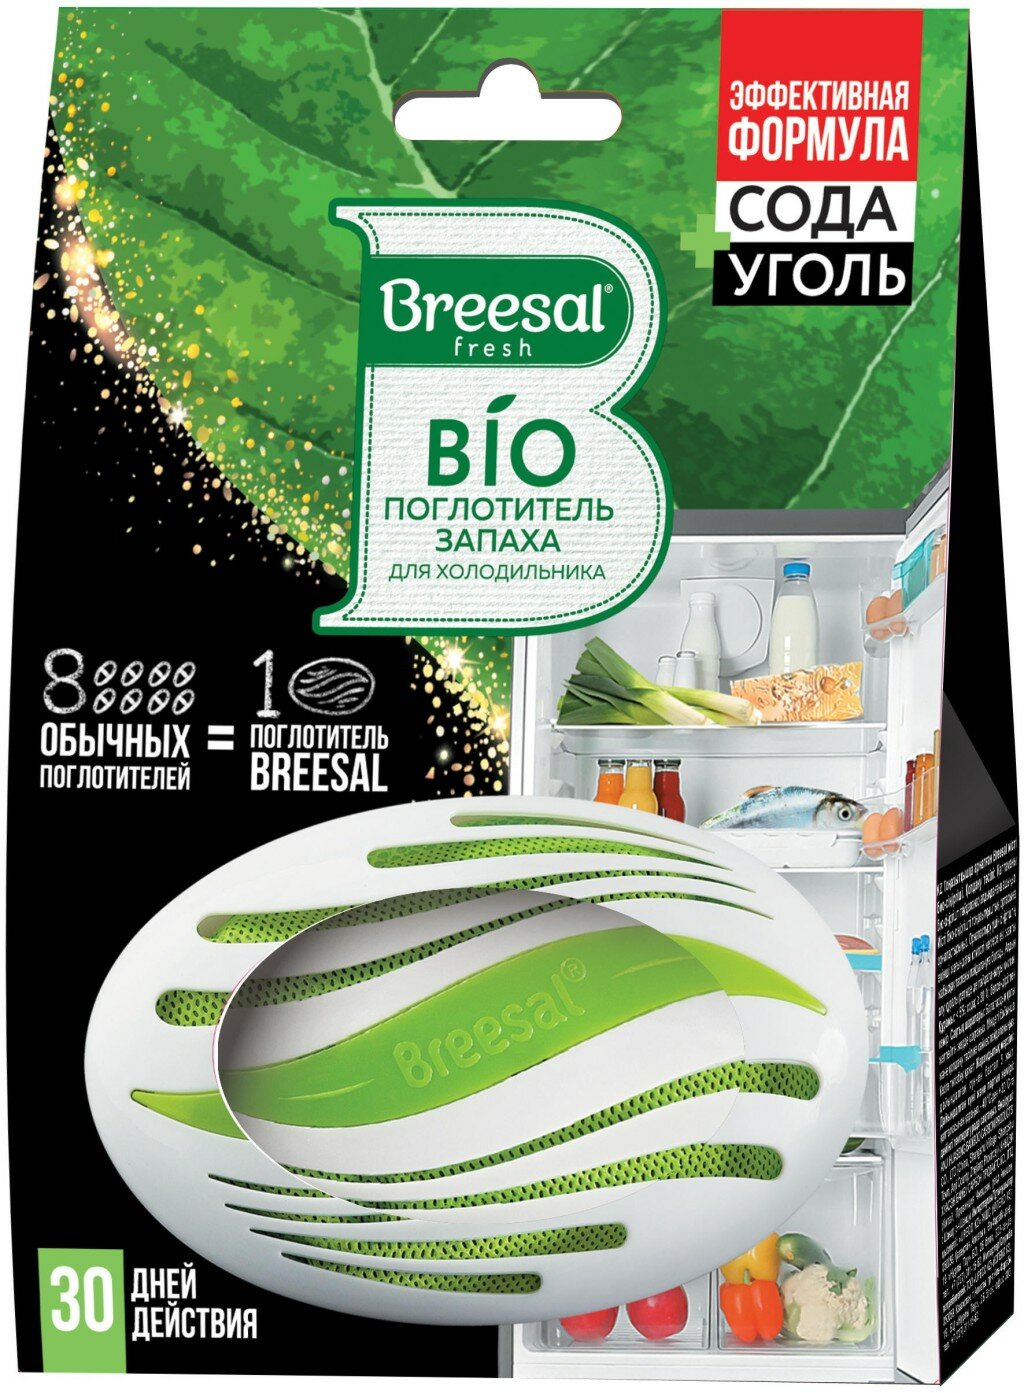 Набор из 3 штук Био-поглотитель запаха для холодильника Breesal 80г